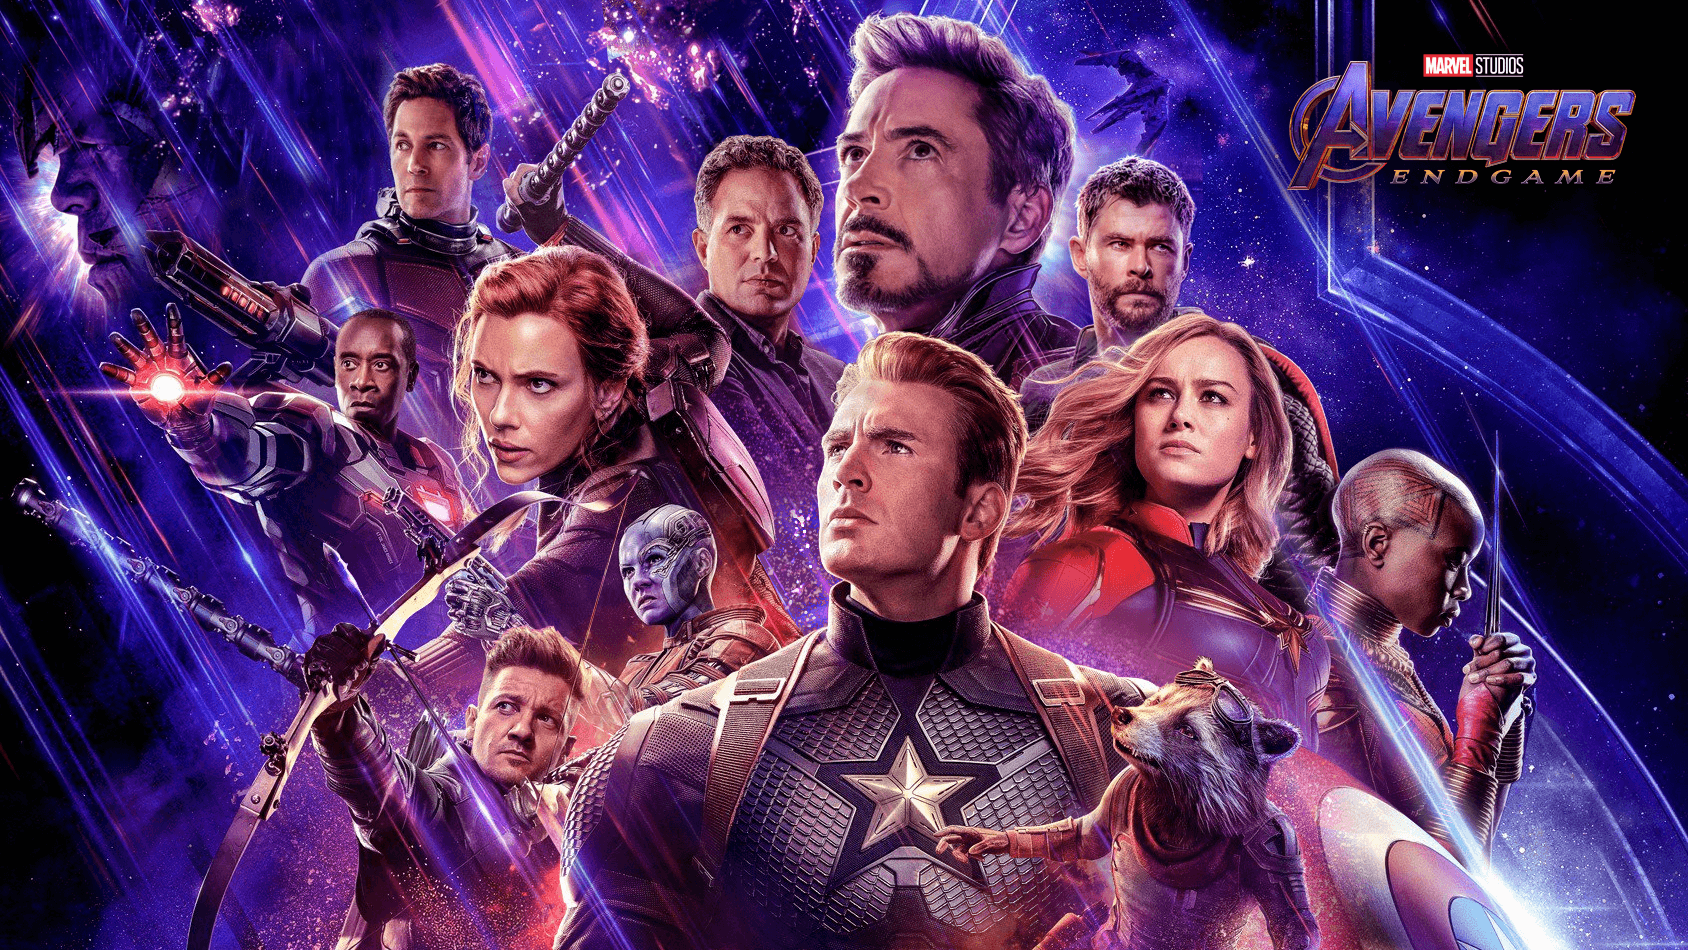 Avengers Endgame Poster 4k Wallpaper